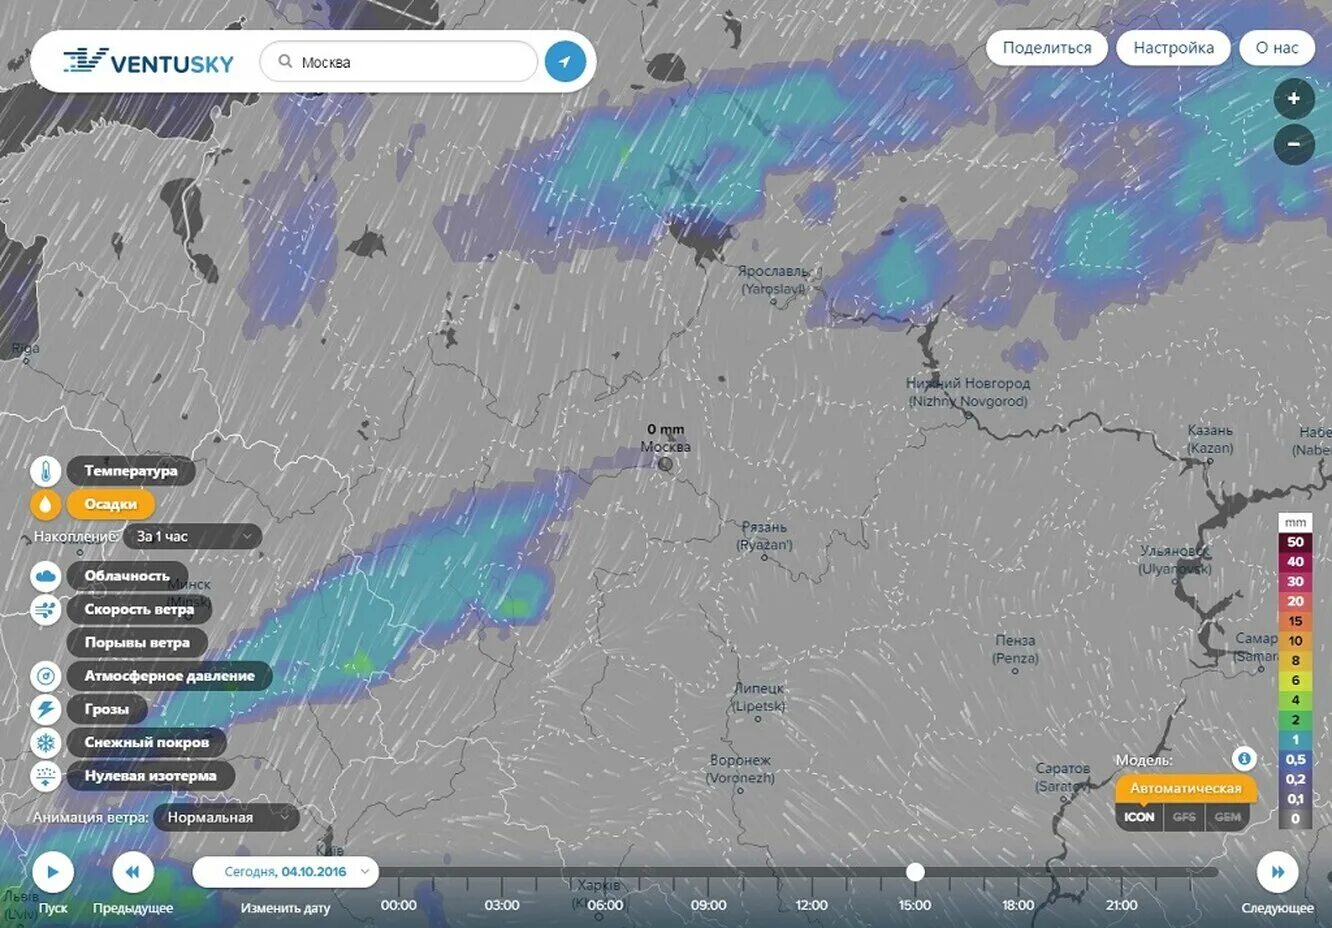 Узнай погоду москва. Карта погоды. Облачность на карте в реальном времени. Карта погодных условий в реальном времени. Карта туч в реальном времени.